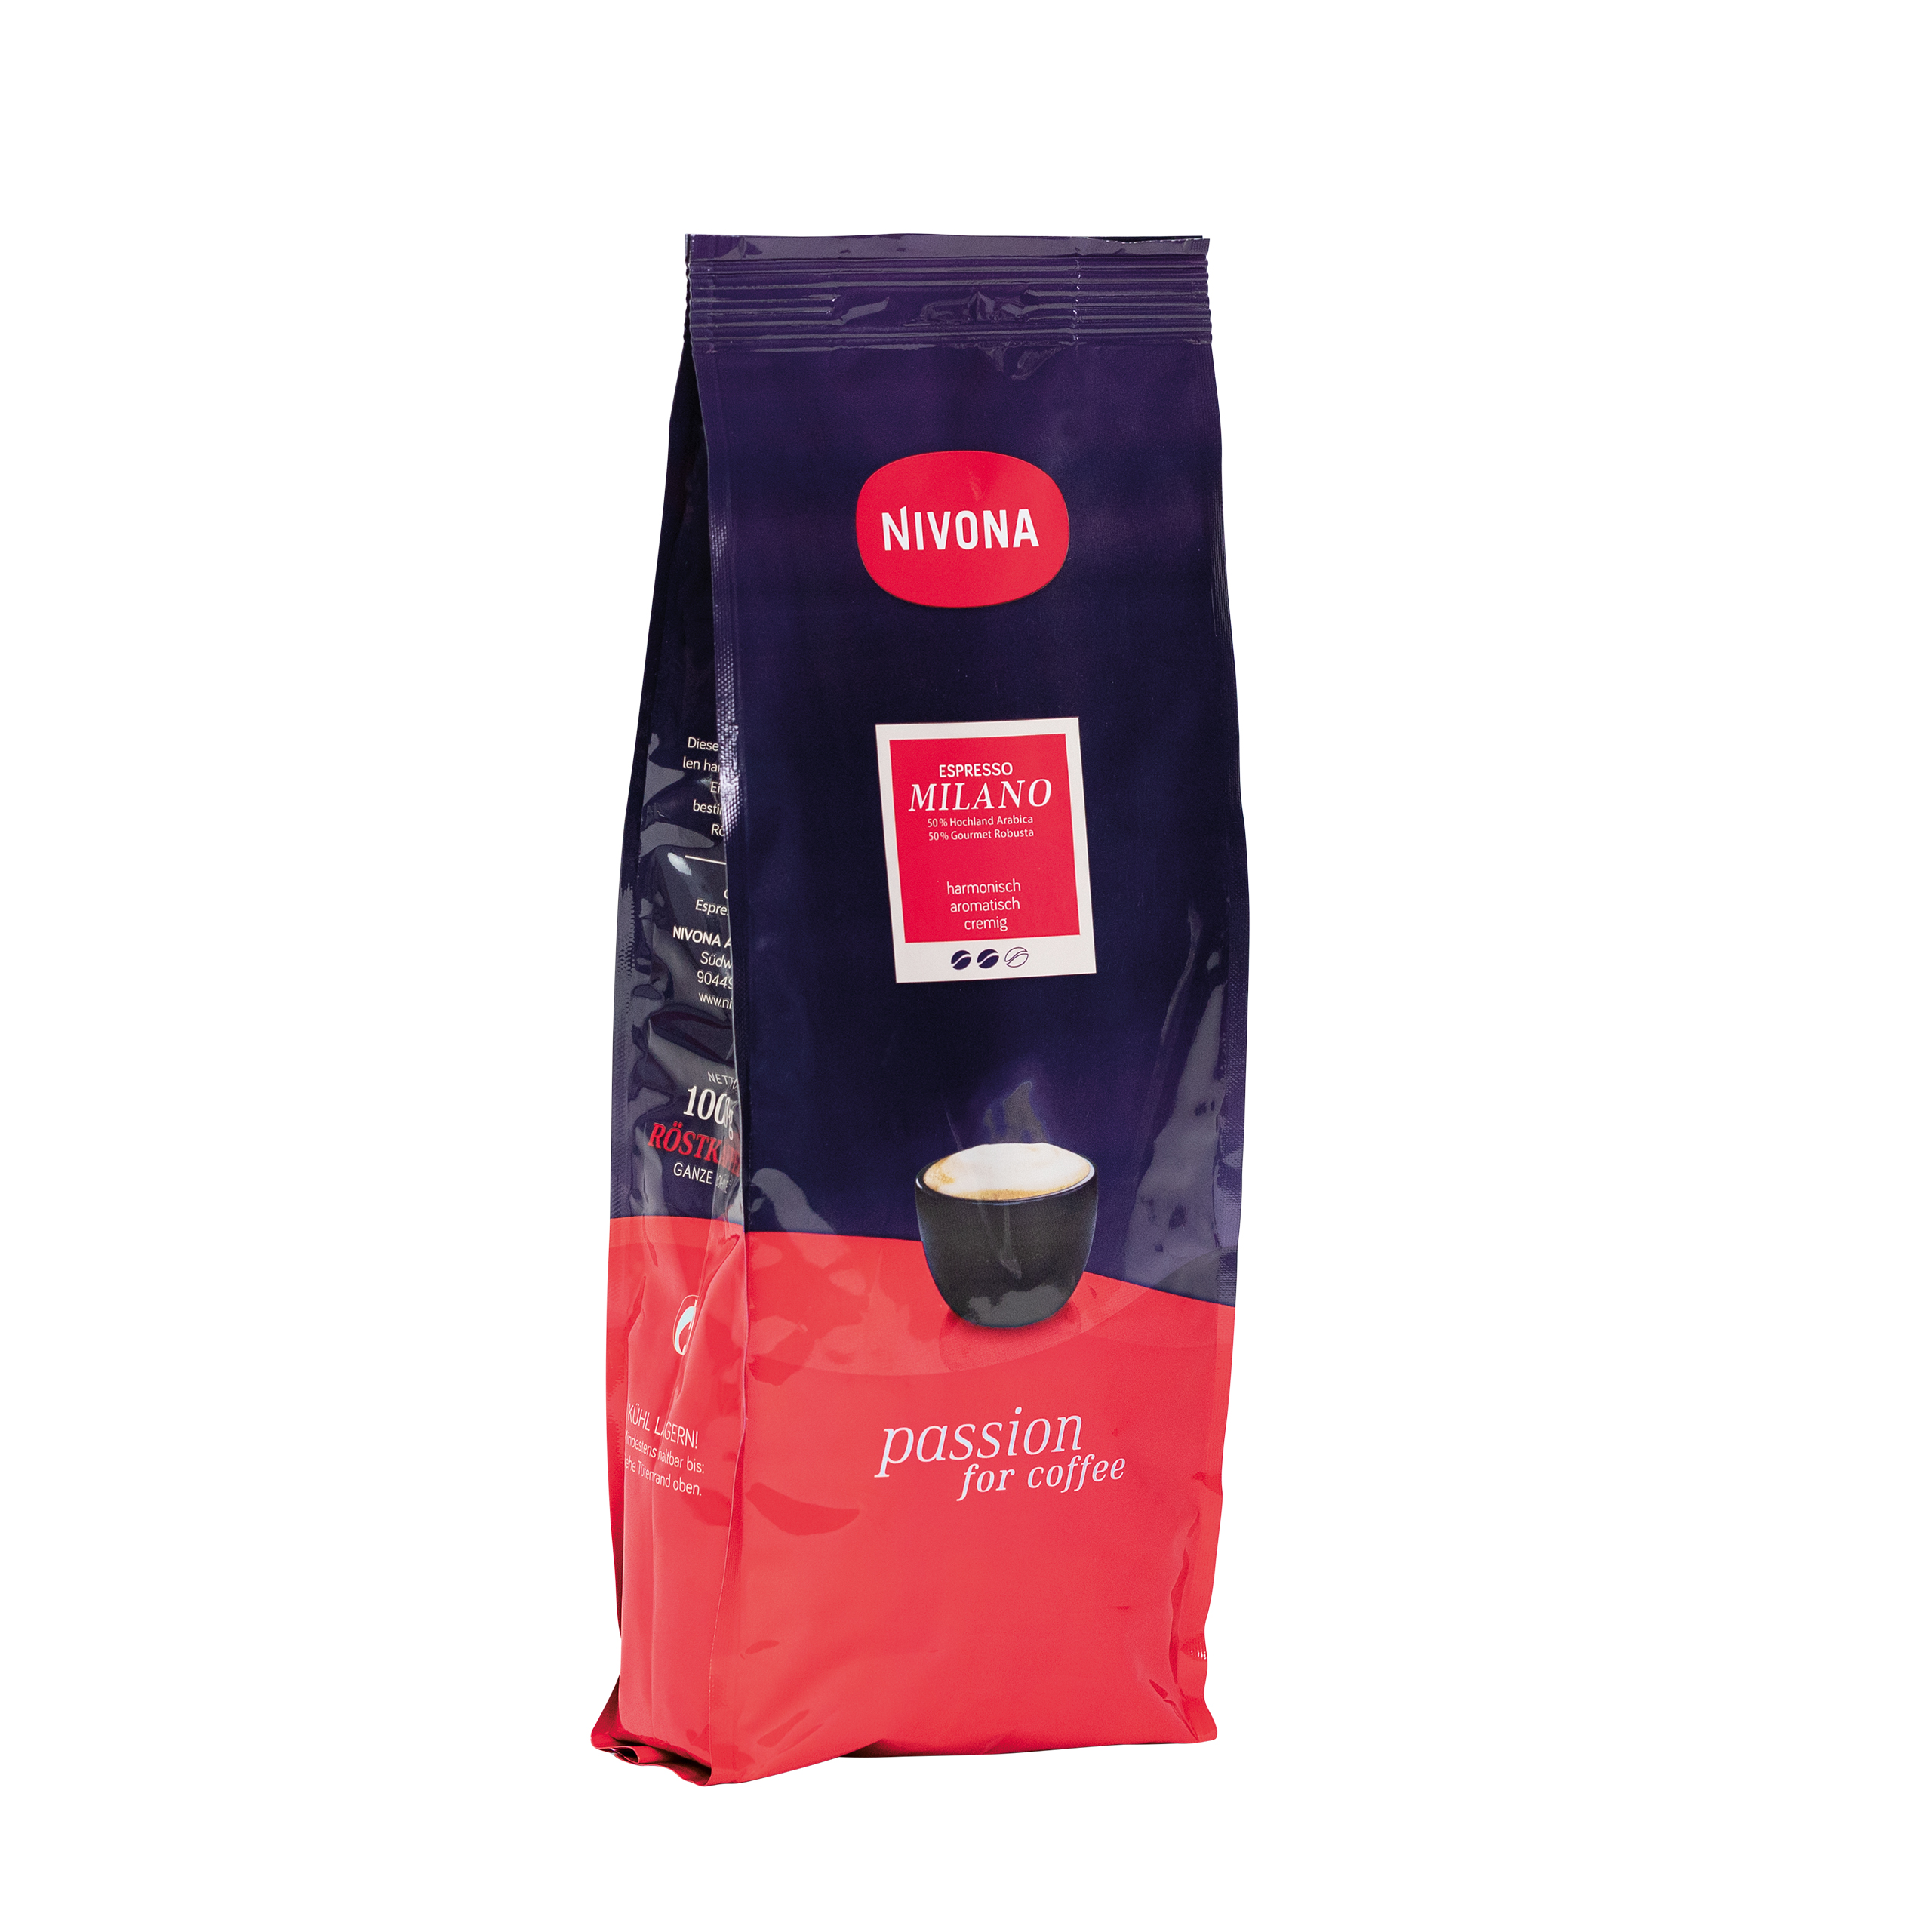 NIM 1000 Caffé Milano espresso beans 1kg,  packing unit: 12 packs/box